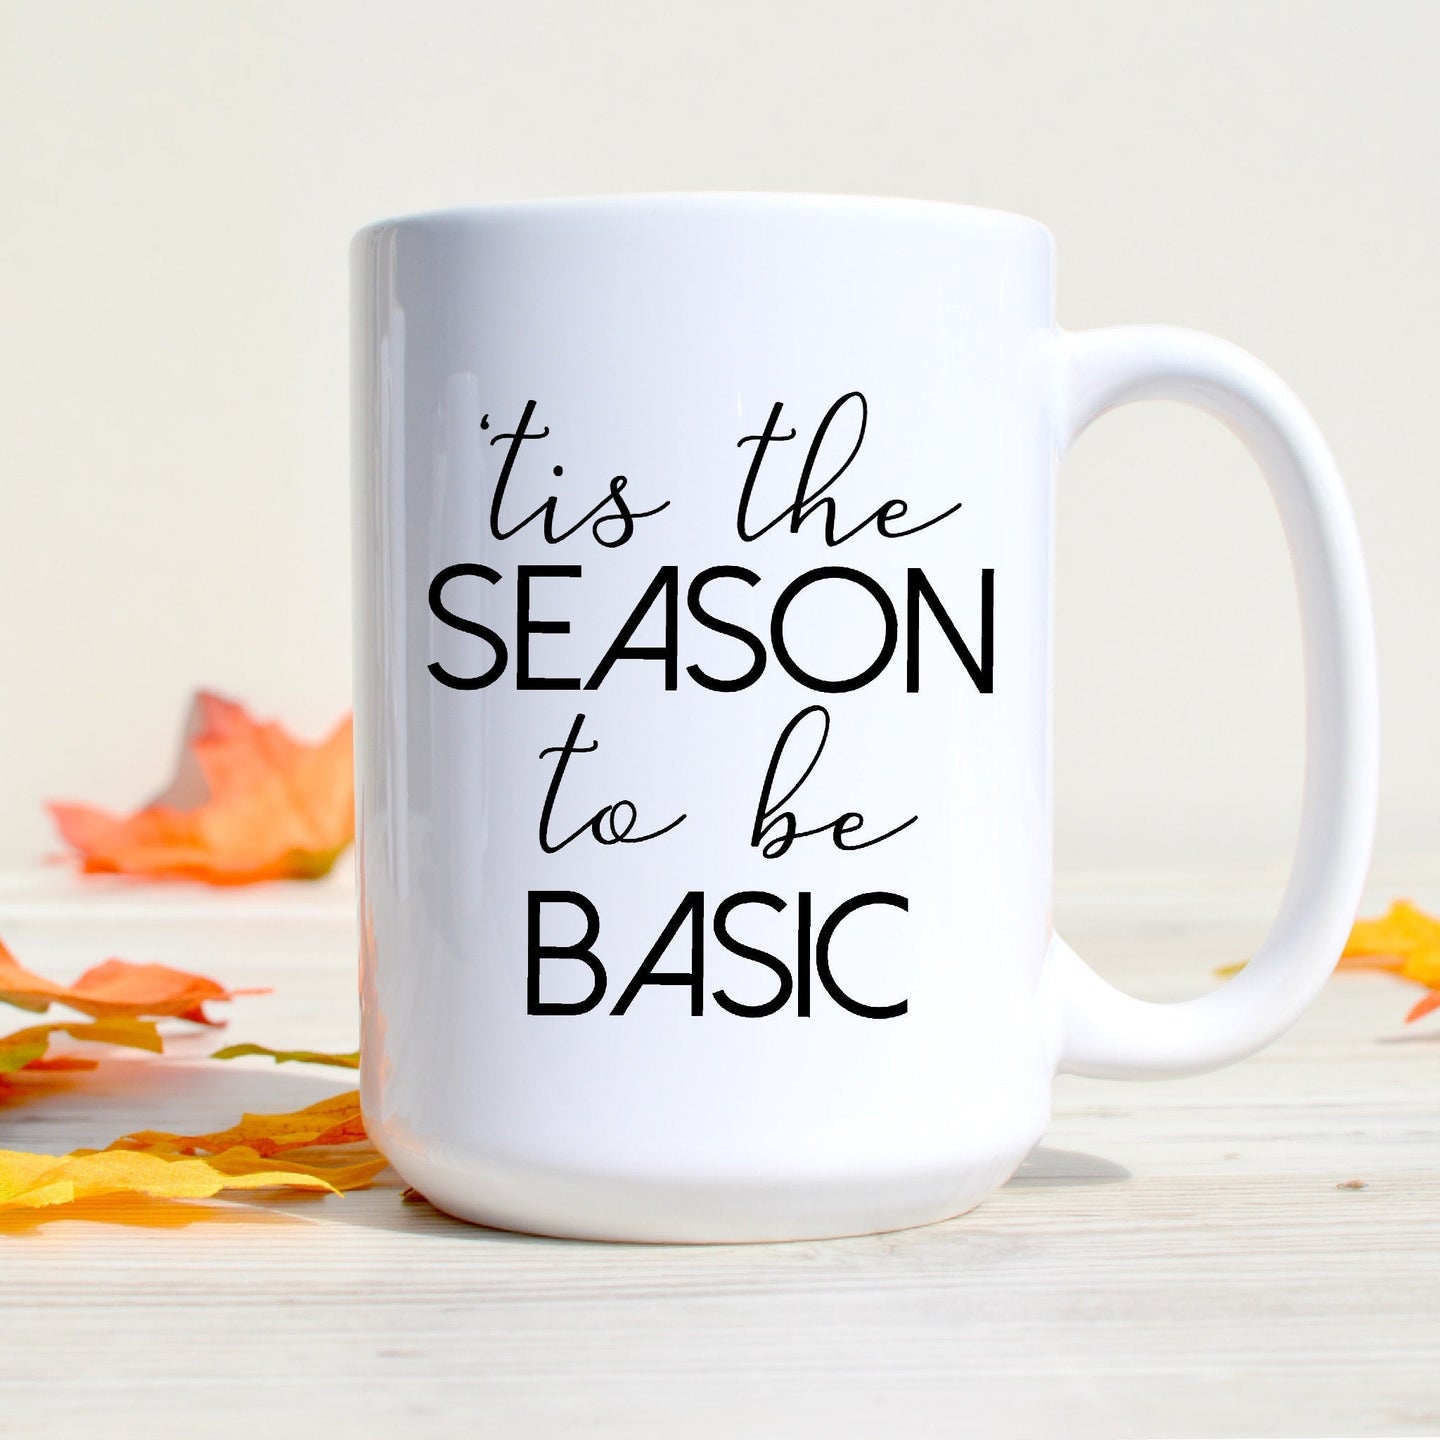 Tis the Season to be Basic